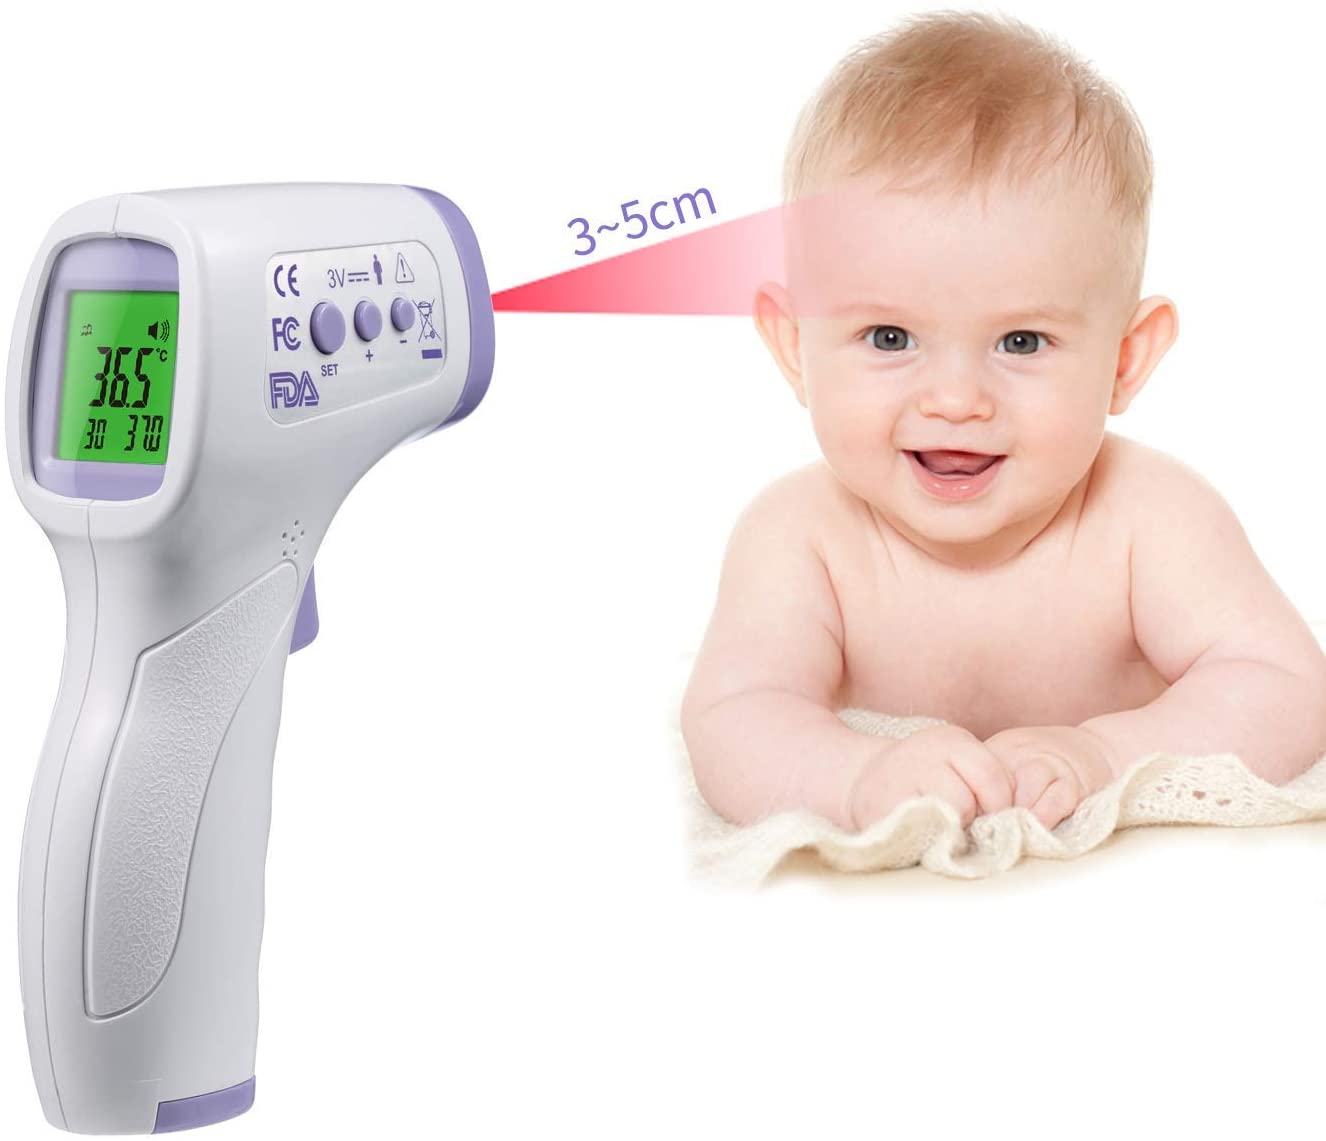 Termometro frontale a infrarossi senza contatto con allarme febbre e funzione memoria – ideale per neonati, bambini, adulti, interni ed esterni